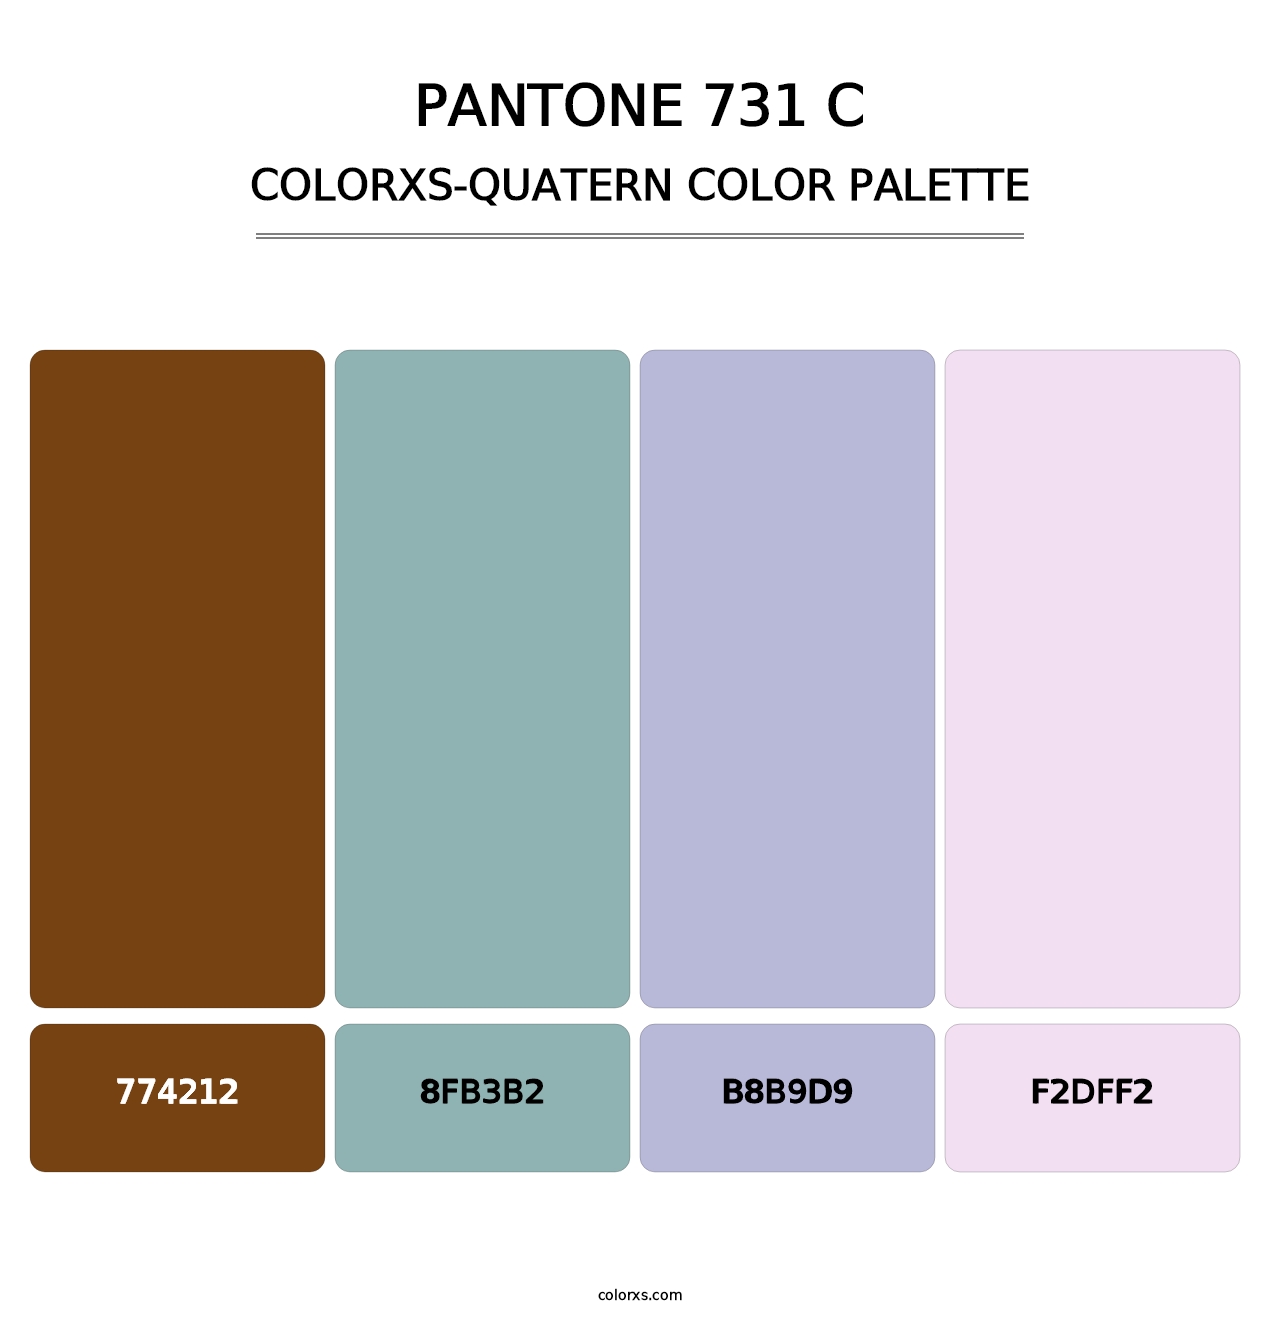 PANTONE 731 C - Colorxs Quatern Palette